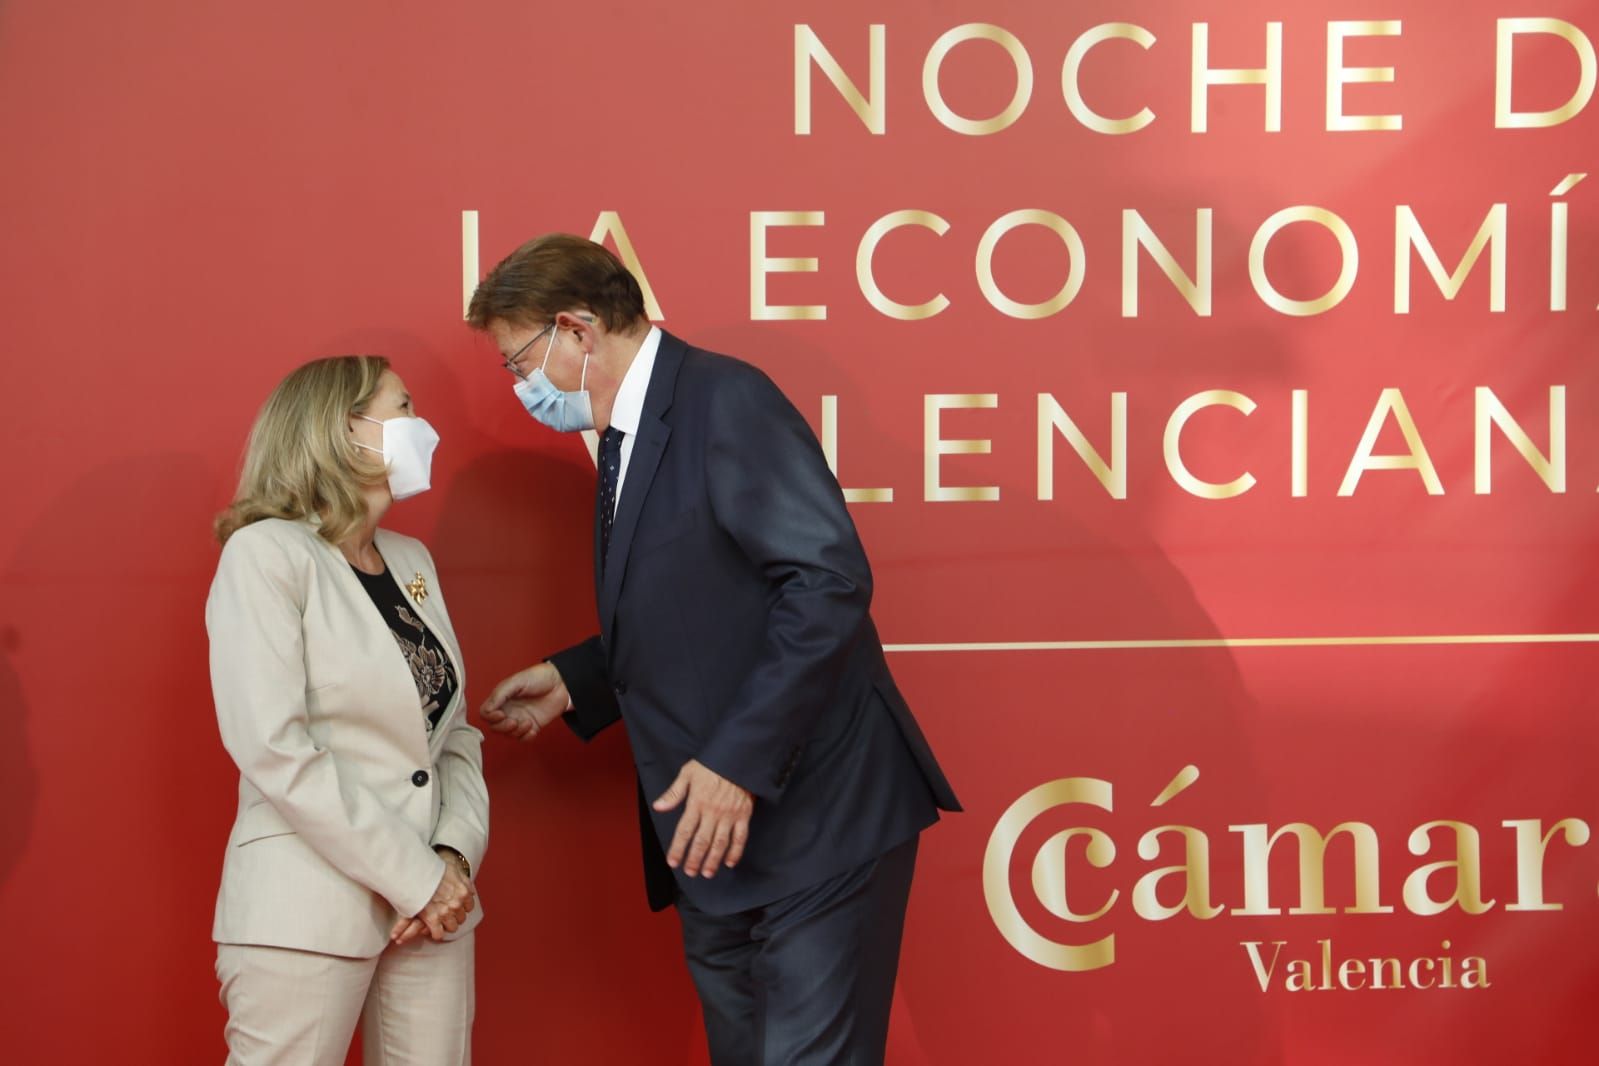 La noche de la economía valenciana, en imágenes